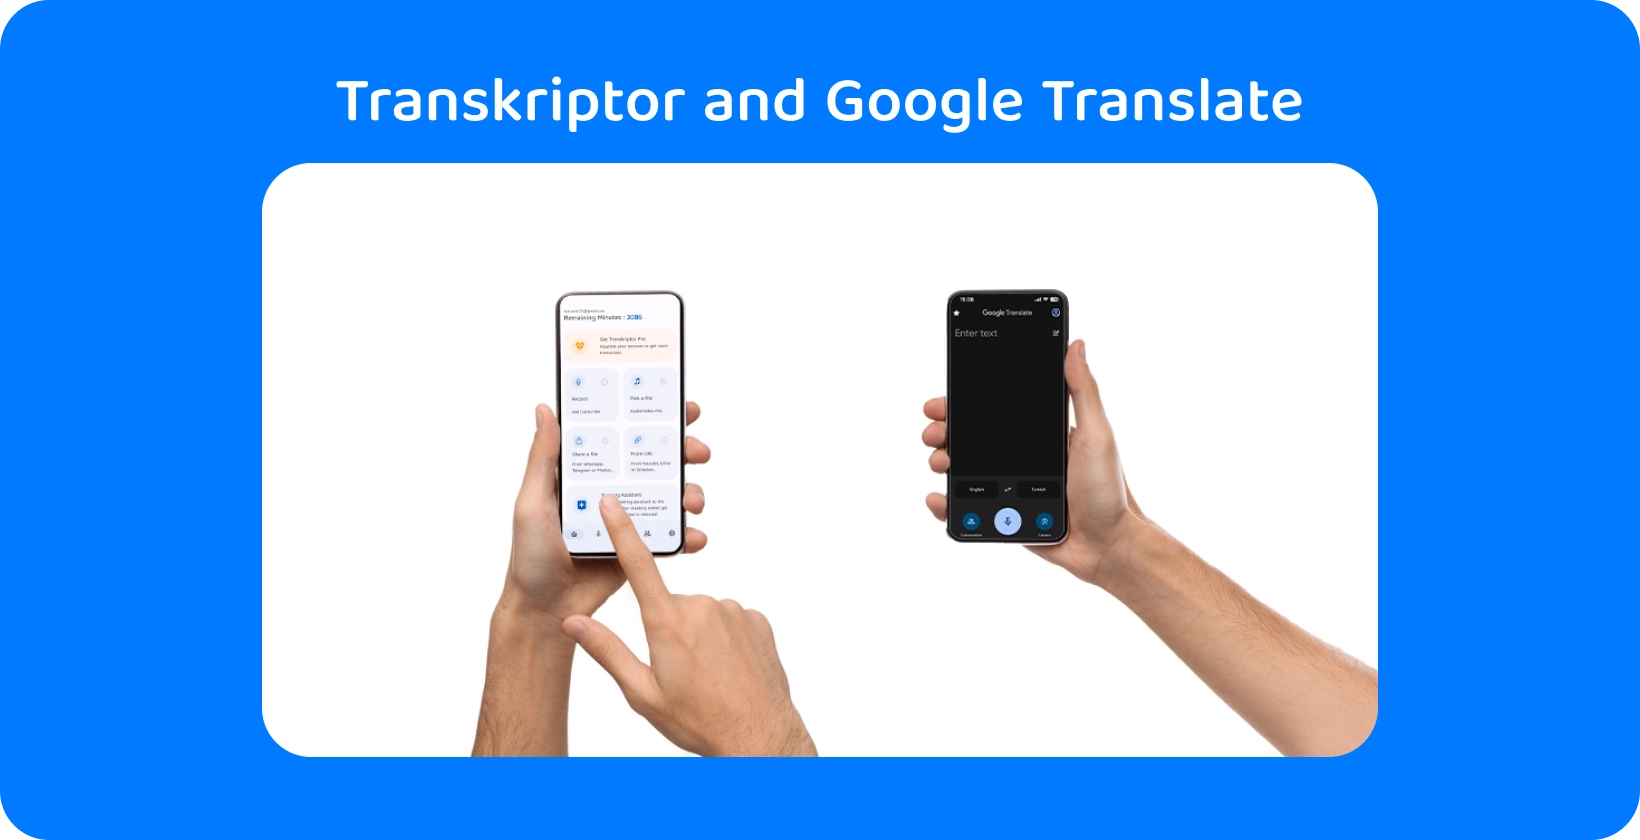 Dwie ręce trzymające smartfony z Transkriptor i Google Translate, demonstrujące transkrypcję audio i tłumaczenie.